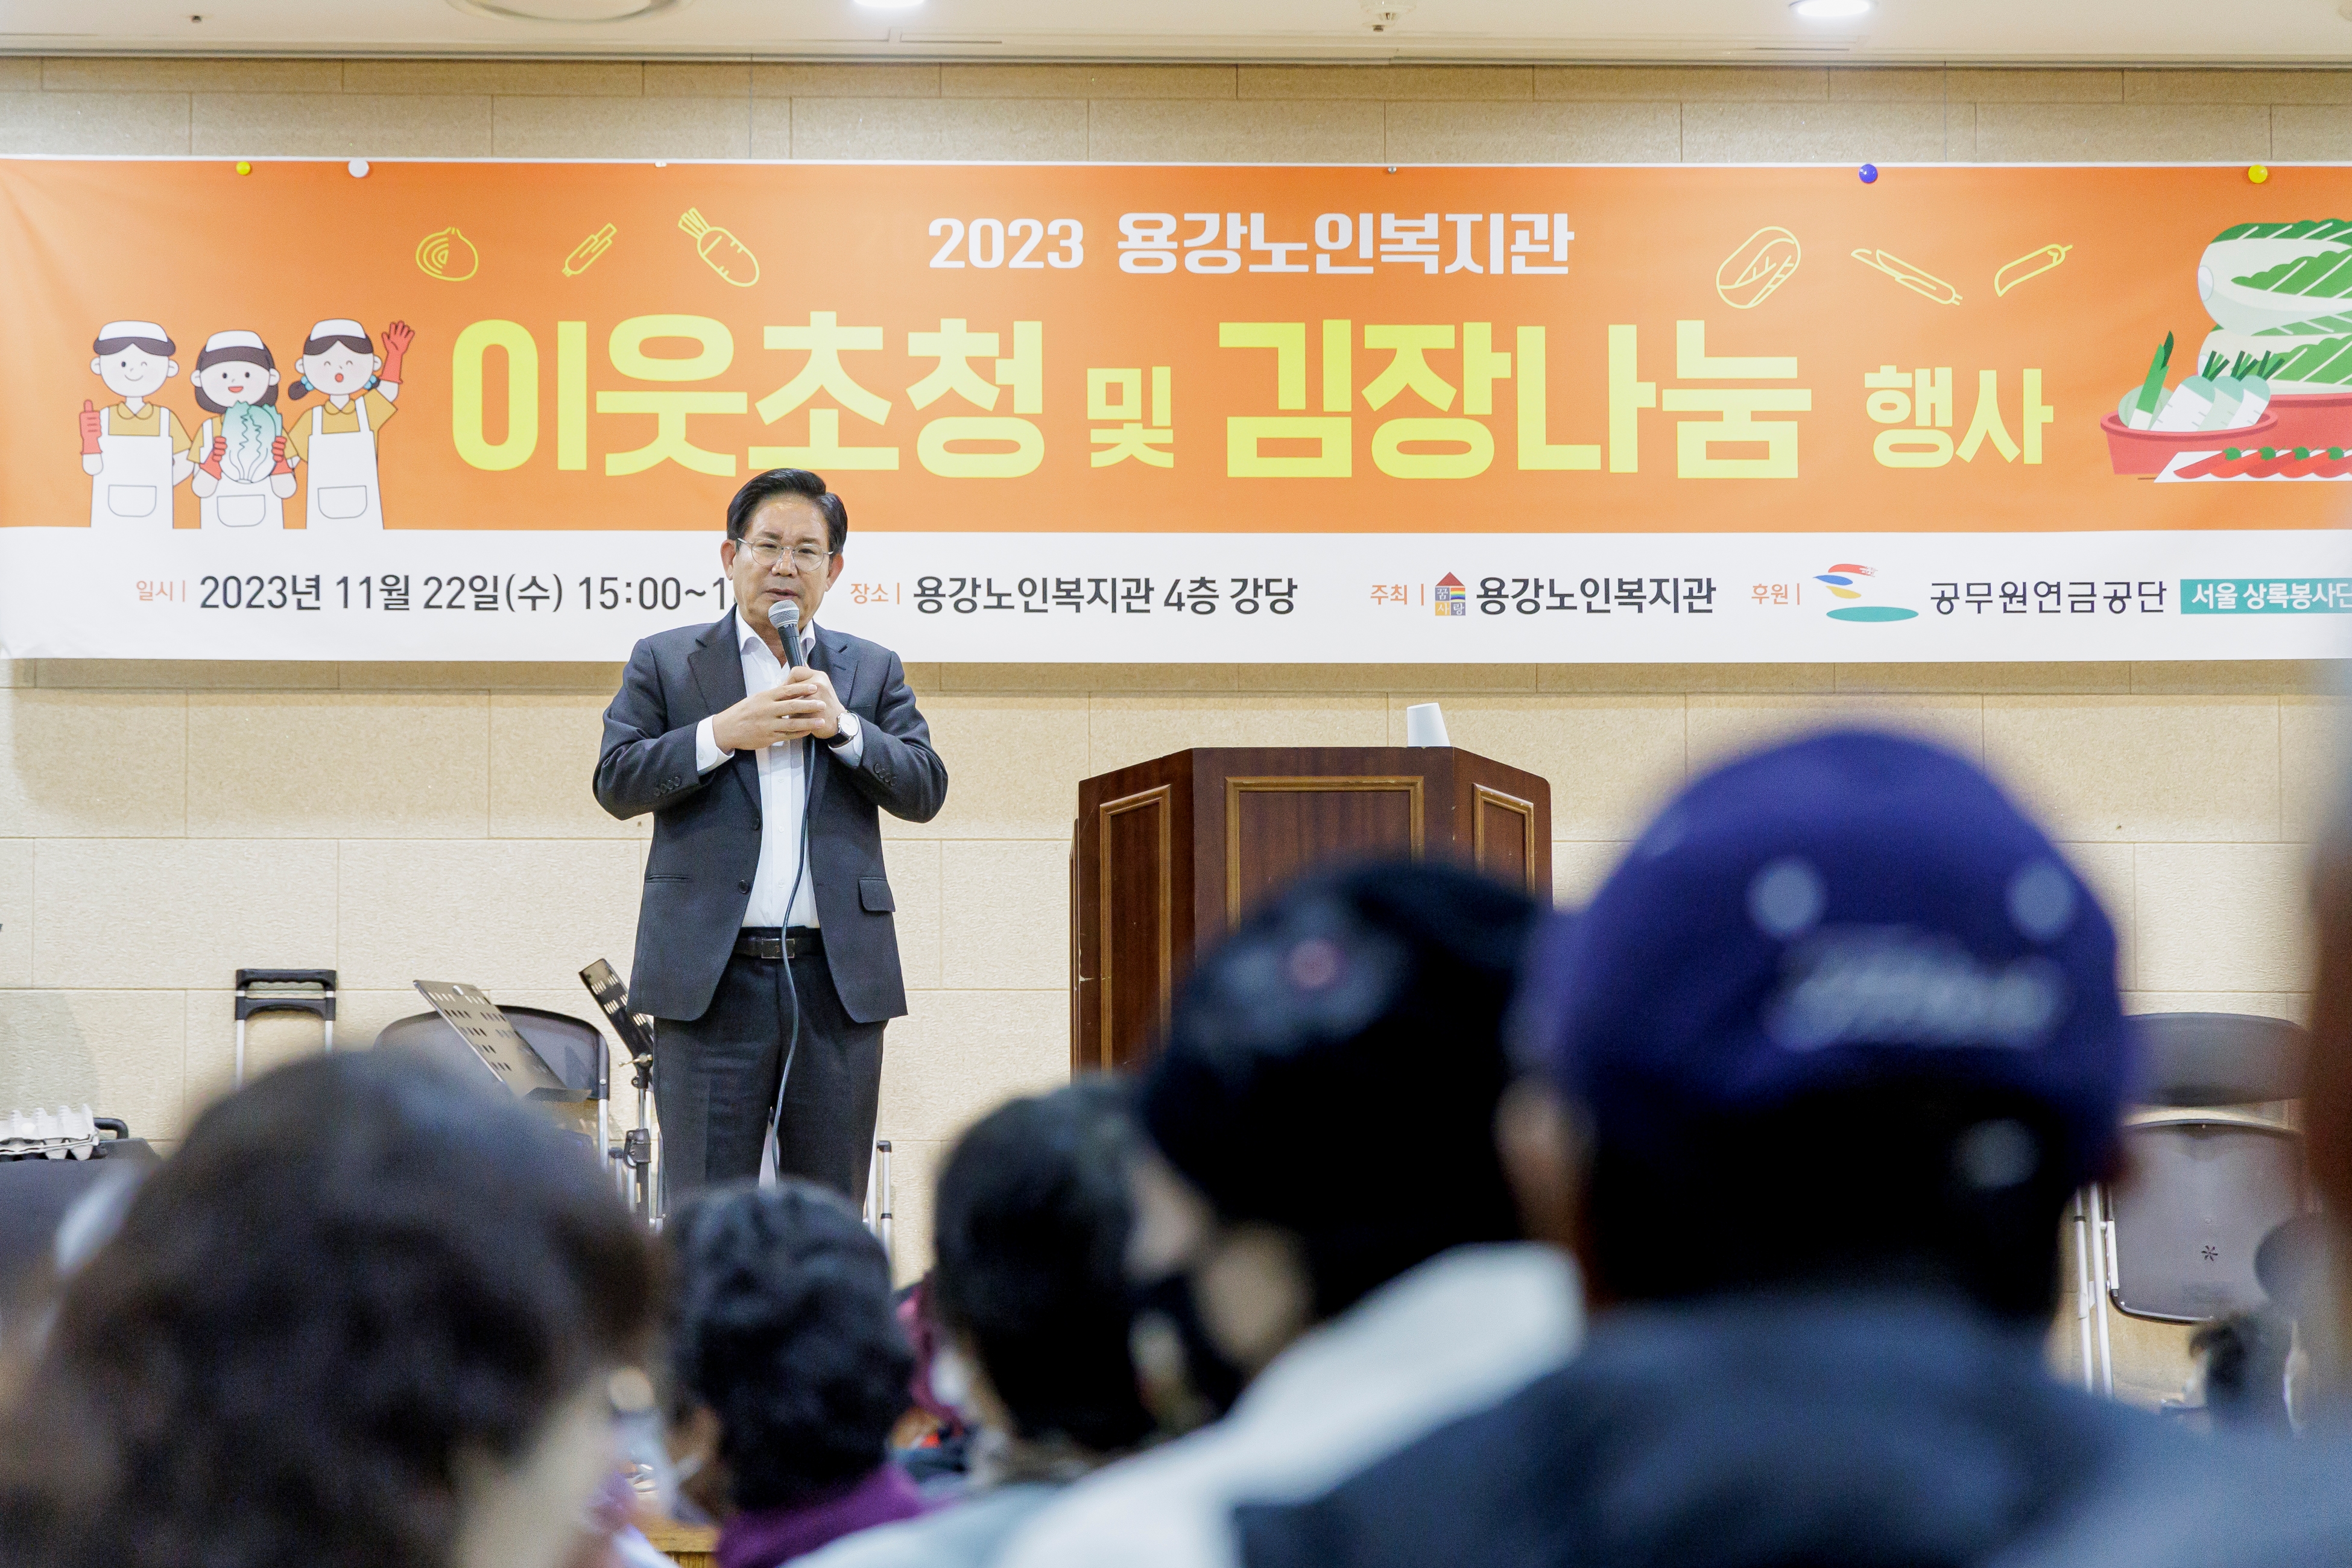 박강수 마포구청장이 지난해 11월 용강노인복지관에서 개최된 김장나눔 행사에서 인사말을 하는 모습./사진제공=마포구